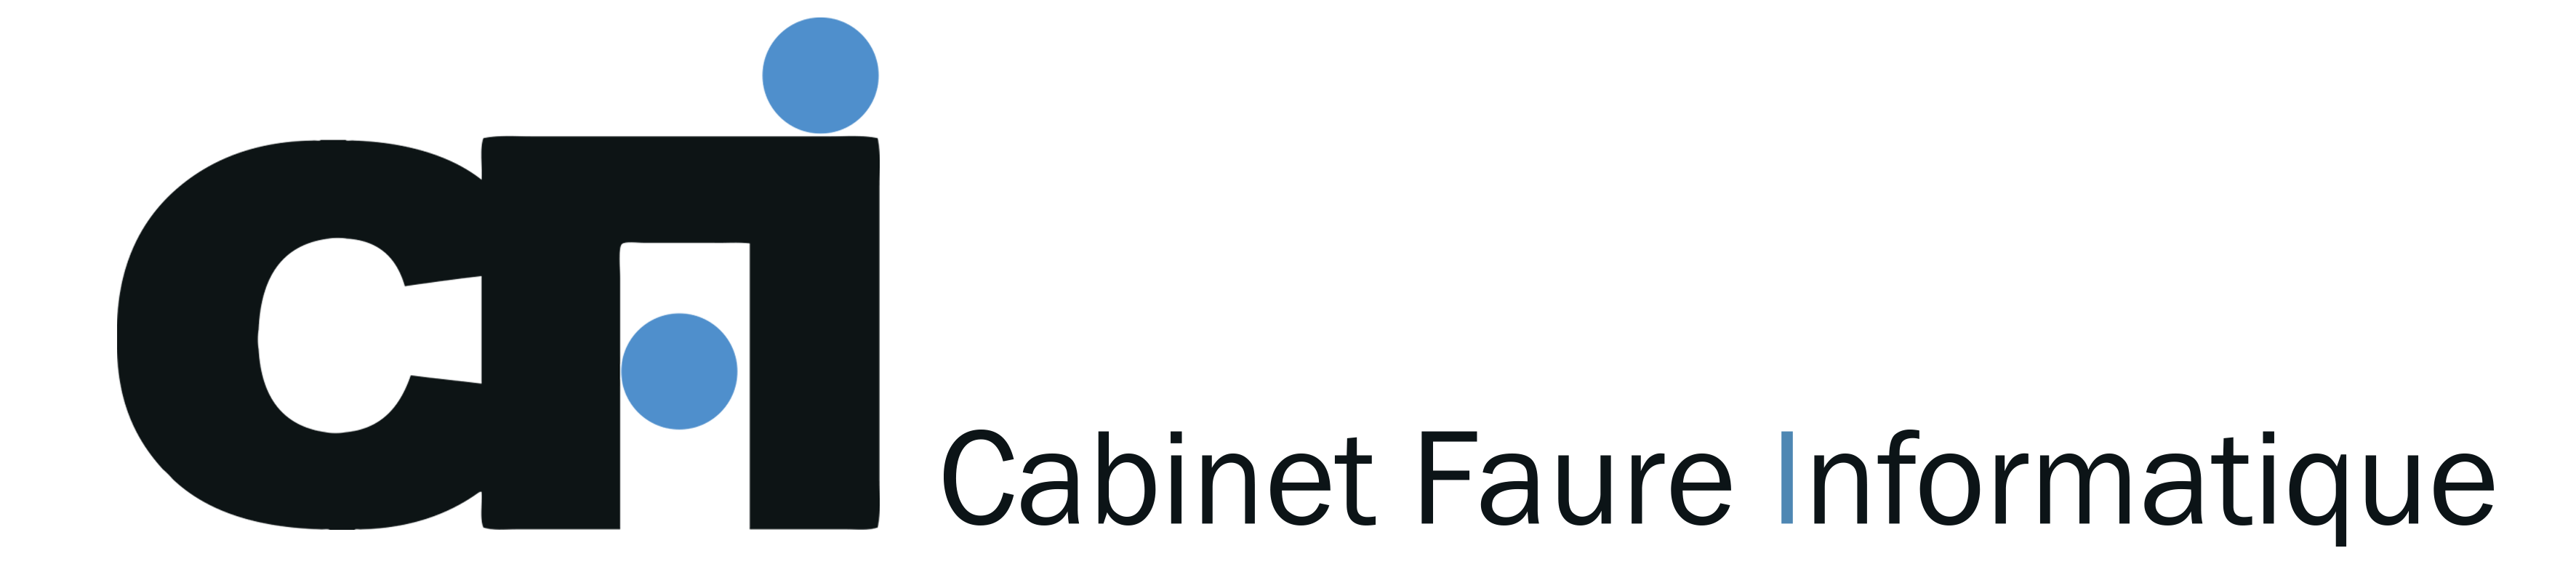 Cabinet Faure Informatique